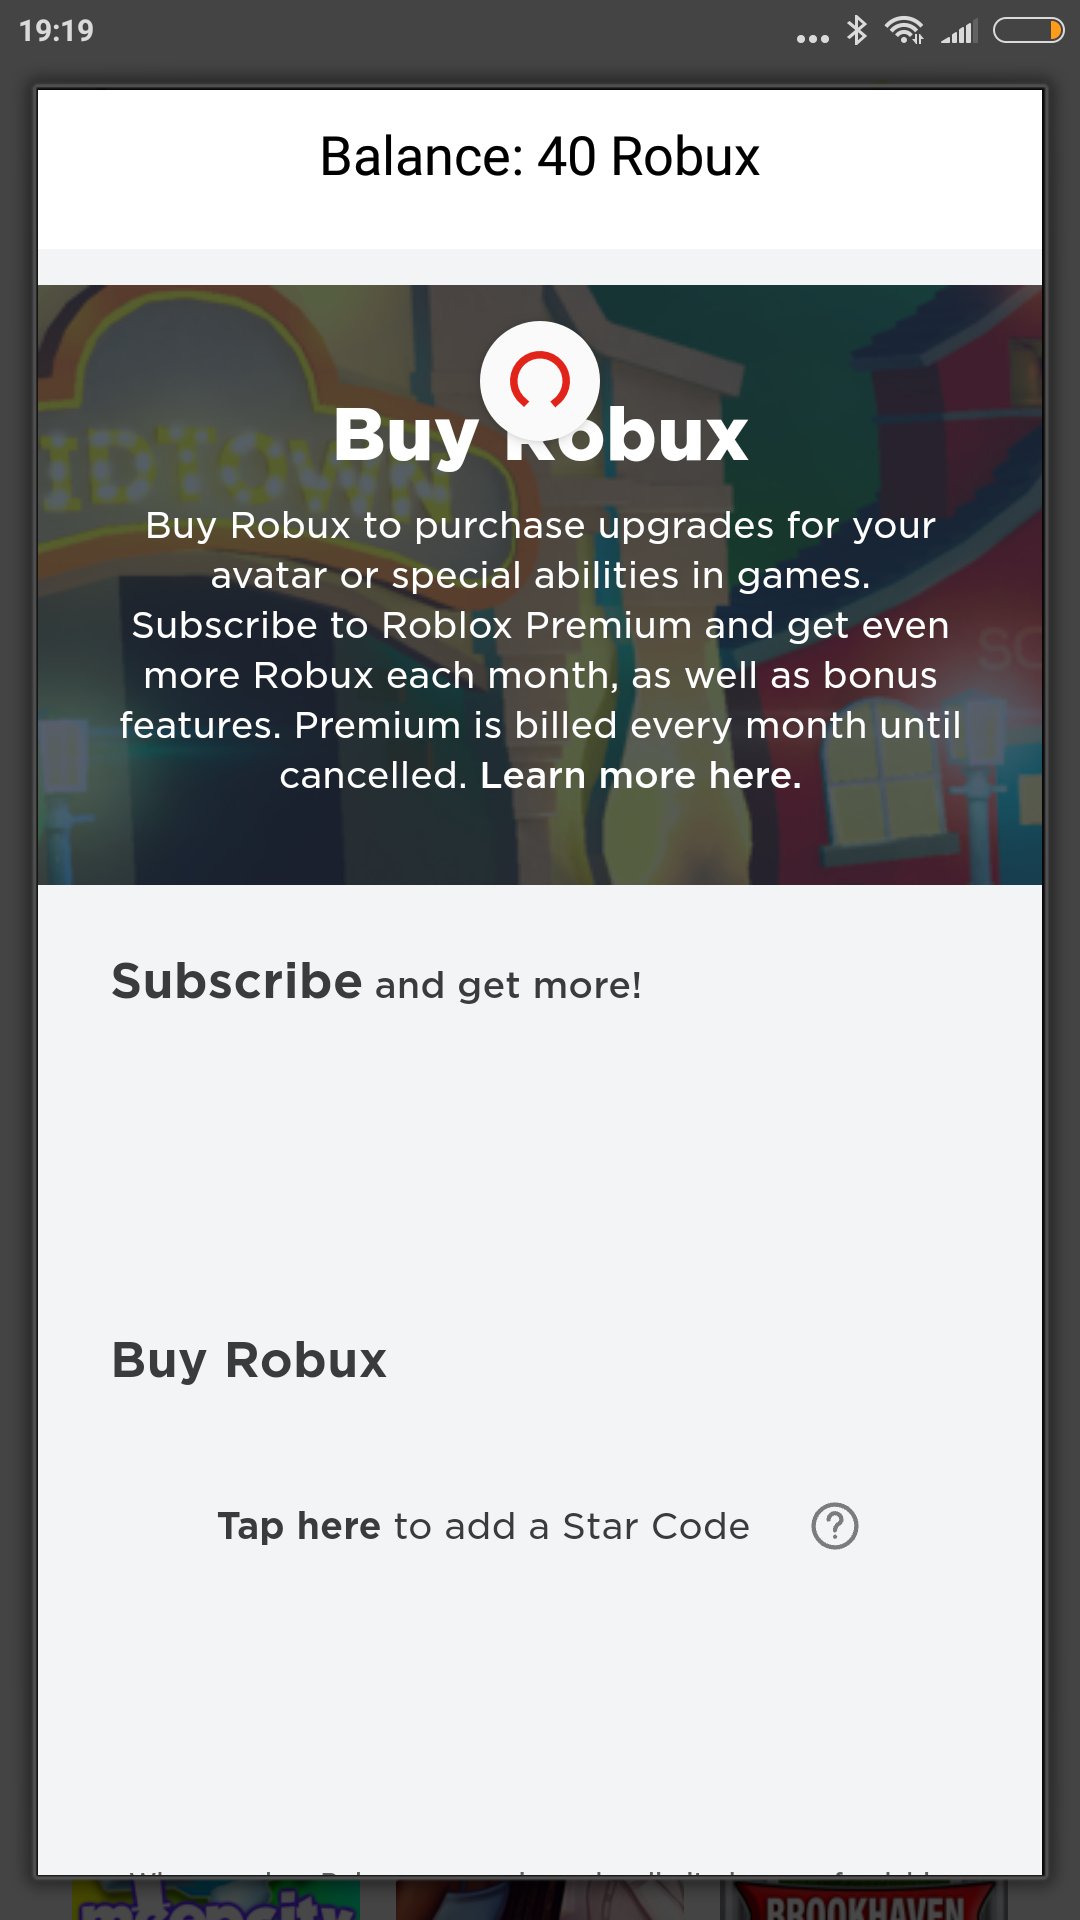 Hãy tham gia cuộc thi của chúng tôi với giải thưởng 40 Robux miễn phí trên Roblox! Được tặng Robux sẽ giúp bạn có được trang phục và phụ kiện mới cho nhân vật của mình và tham gia các hoạt động thú vị trên Roblox hơn. Đừng bỏ lỡ cơ hội để trở thành người chiến thắng và nhận Robux khủng từ chúng tôi.